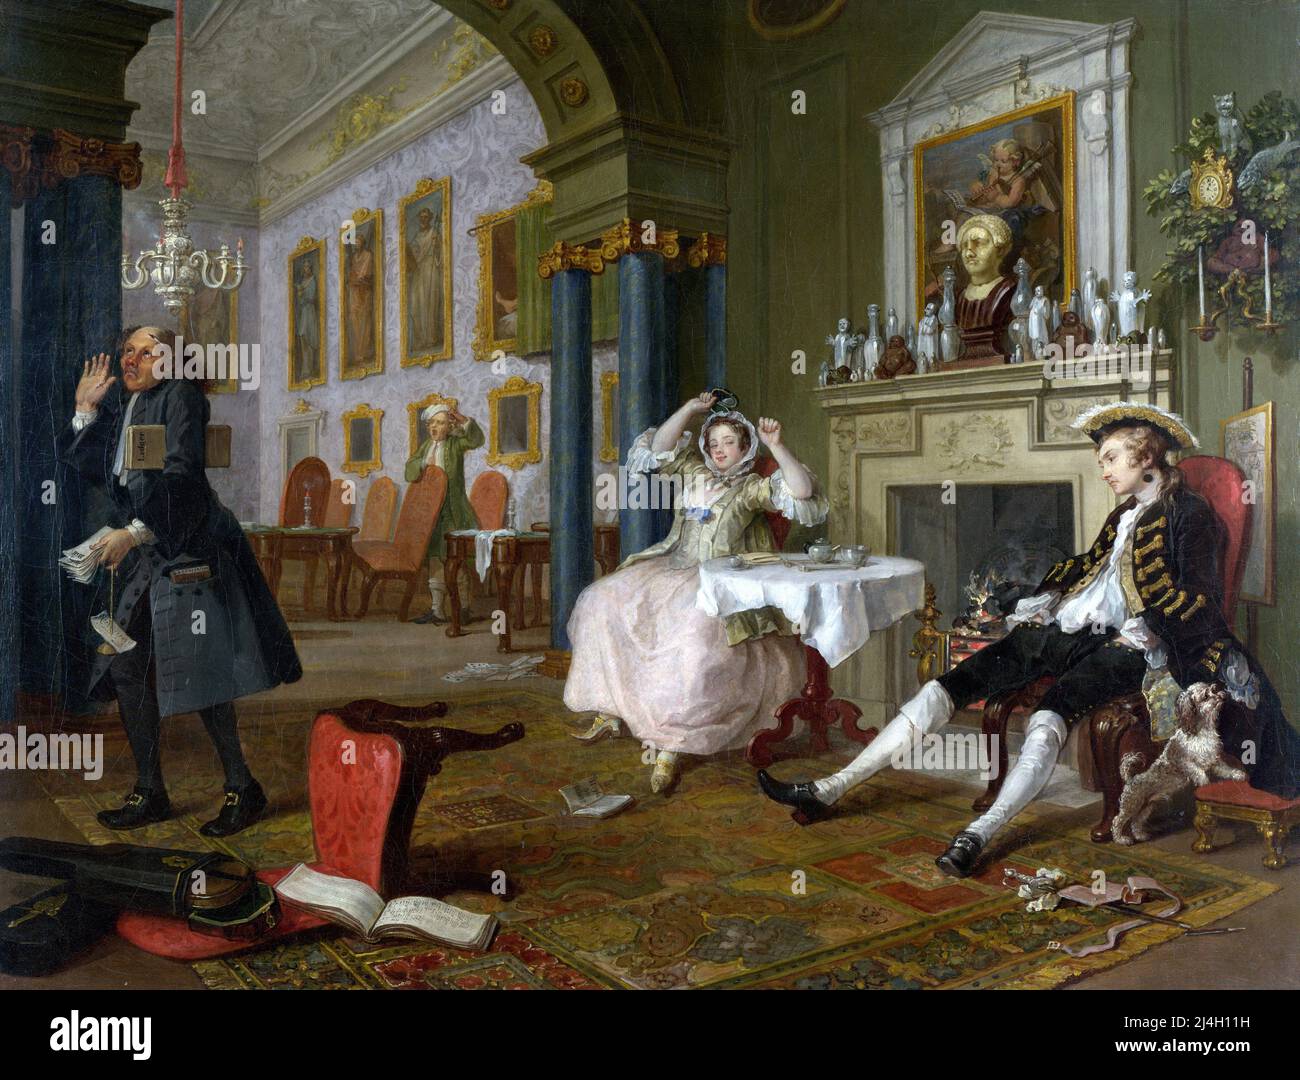 Mariage à la-mode, peu après le mariage (scène deux de six). Peinture de William Hogarth Banque D'Images